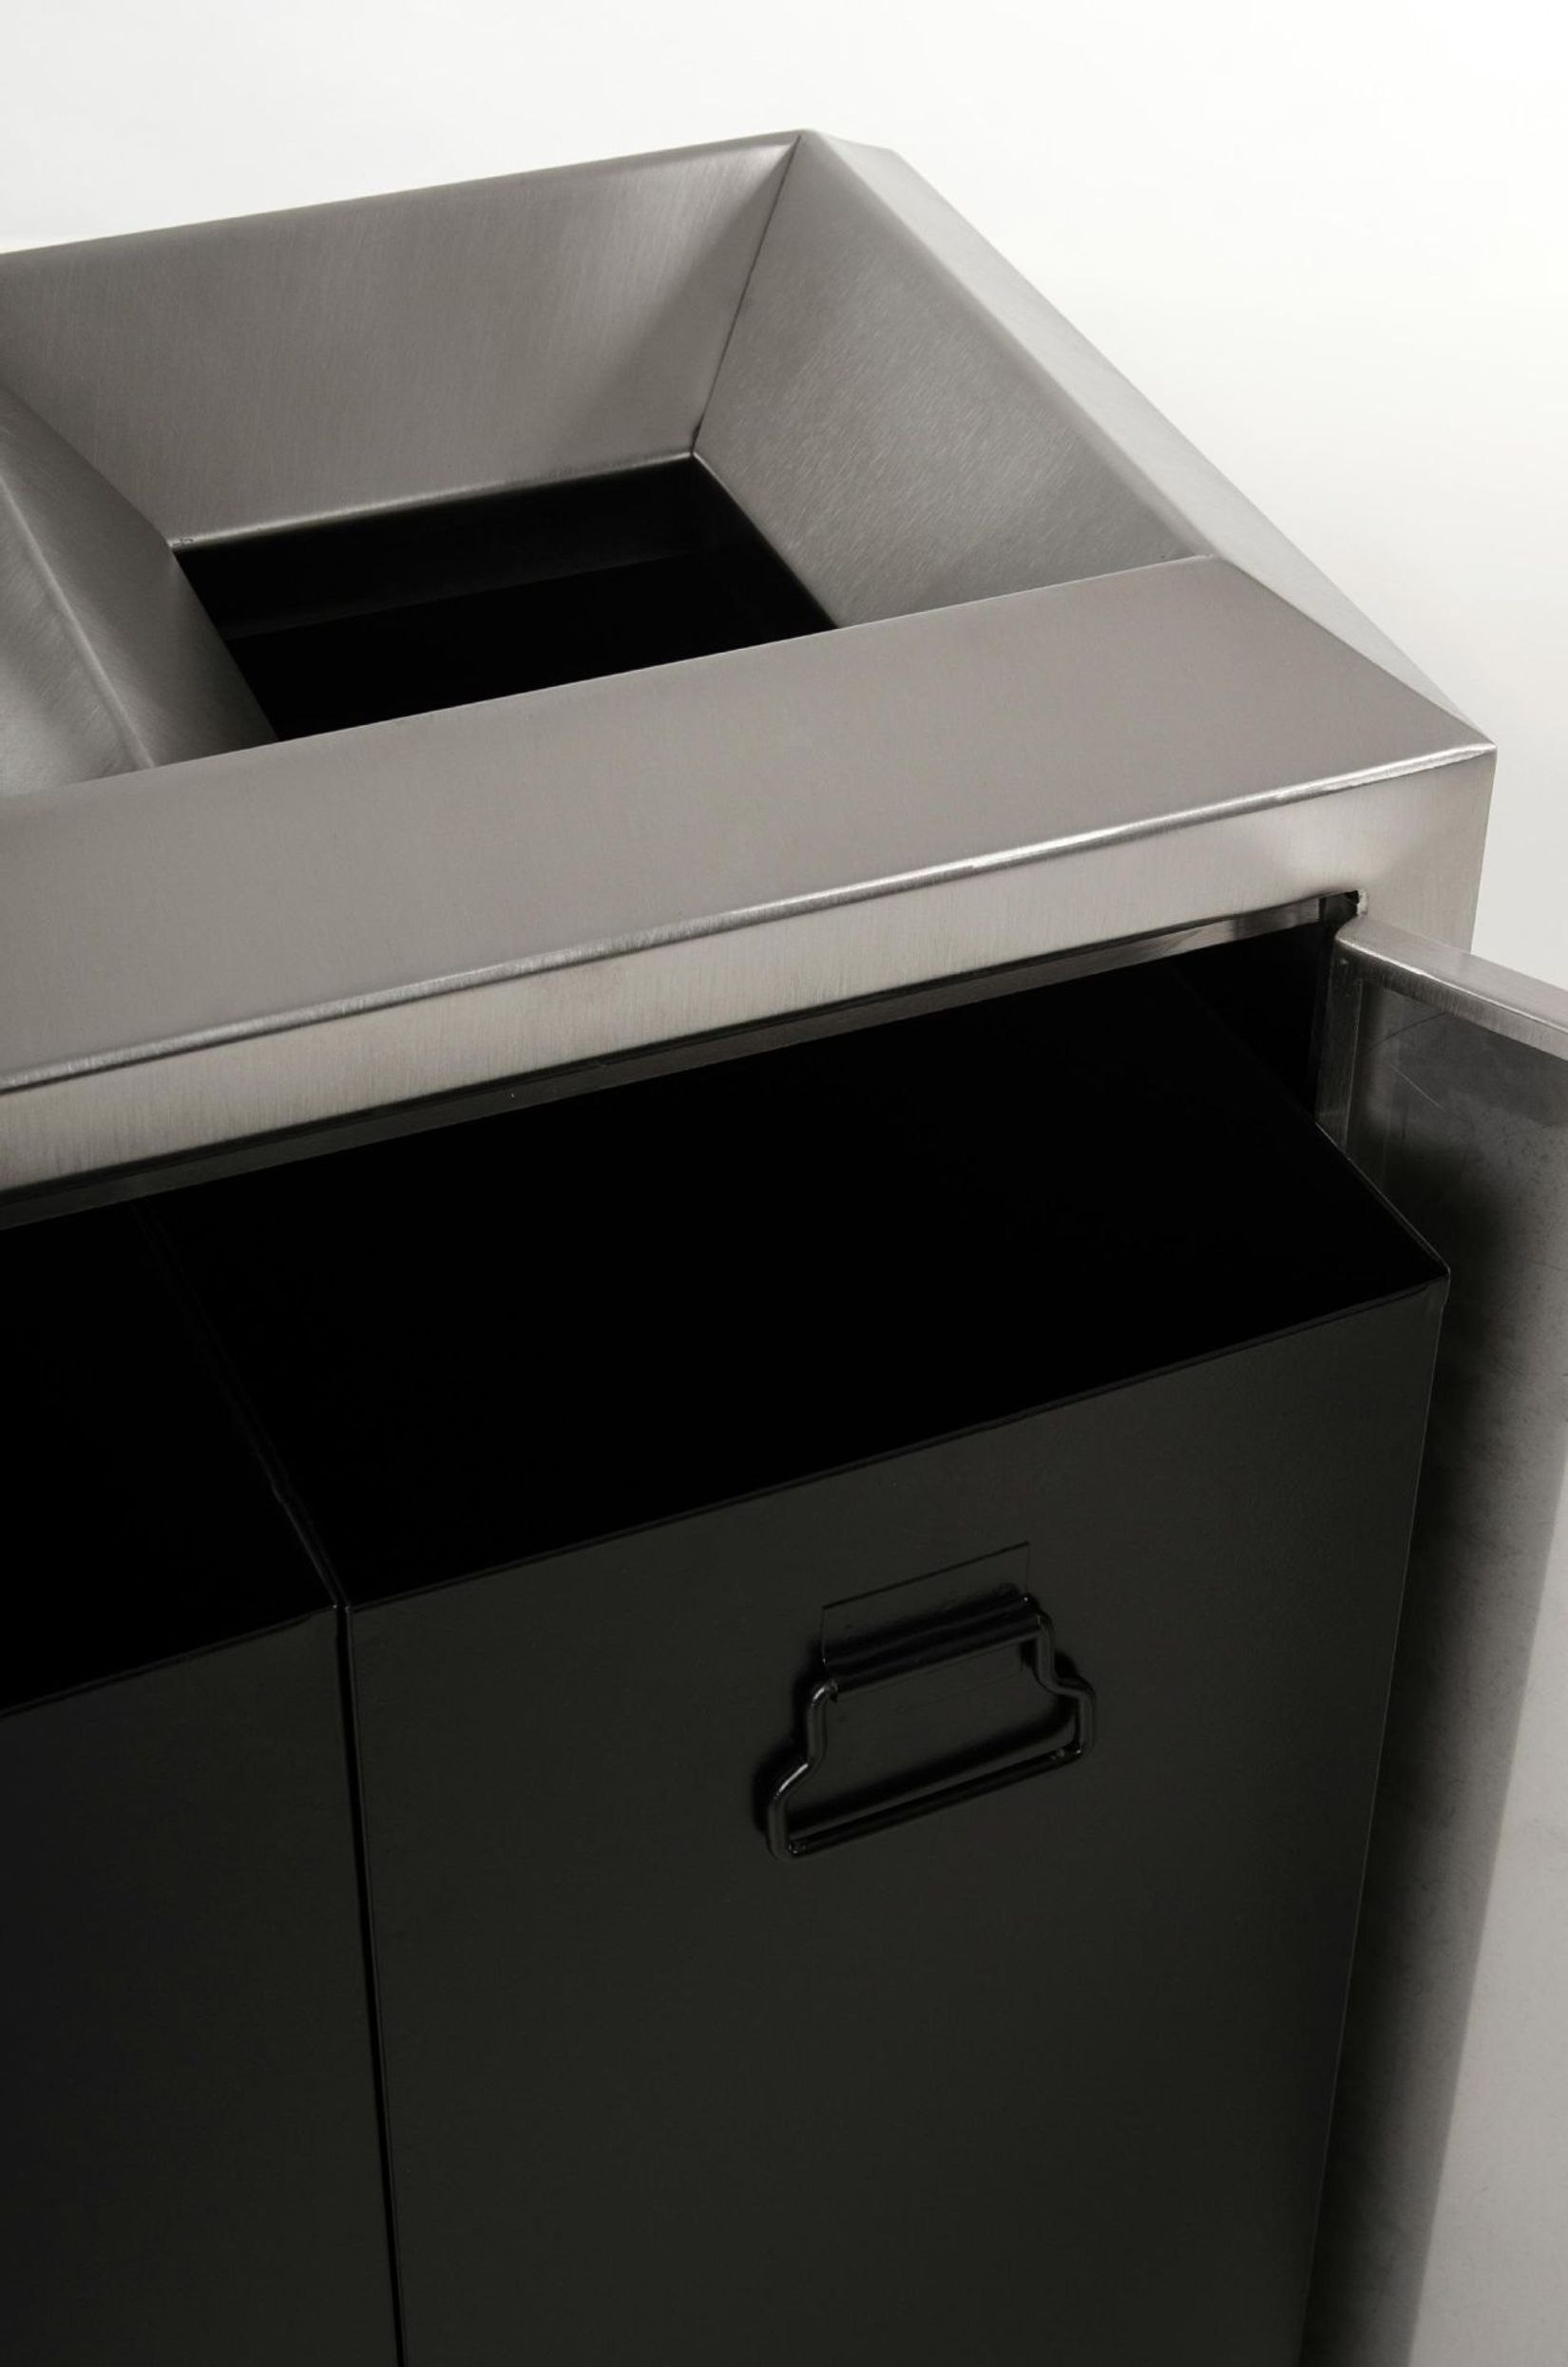 Mülleimer mit Müllboxen Edelstahl "Reciclo", Gebürstet